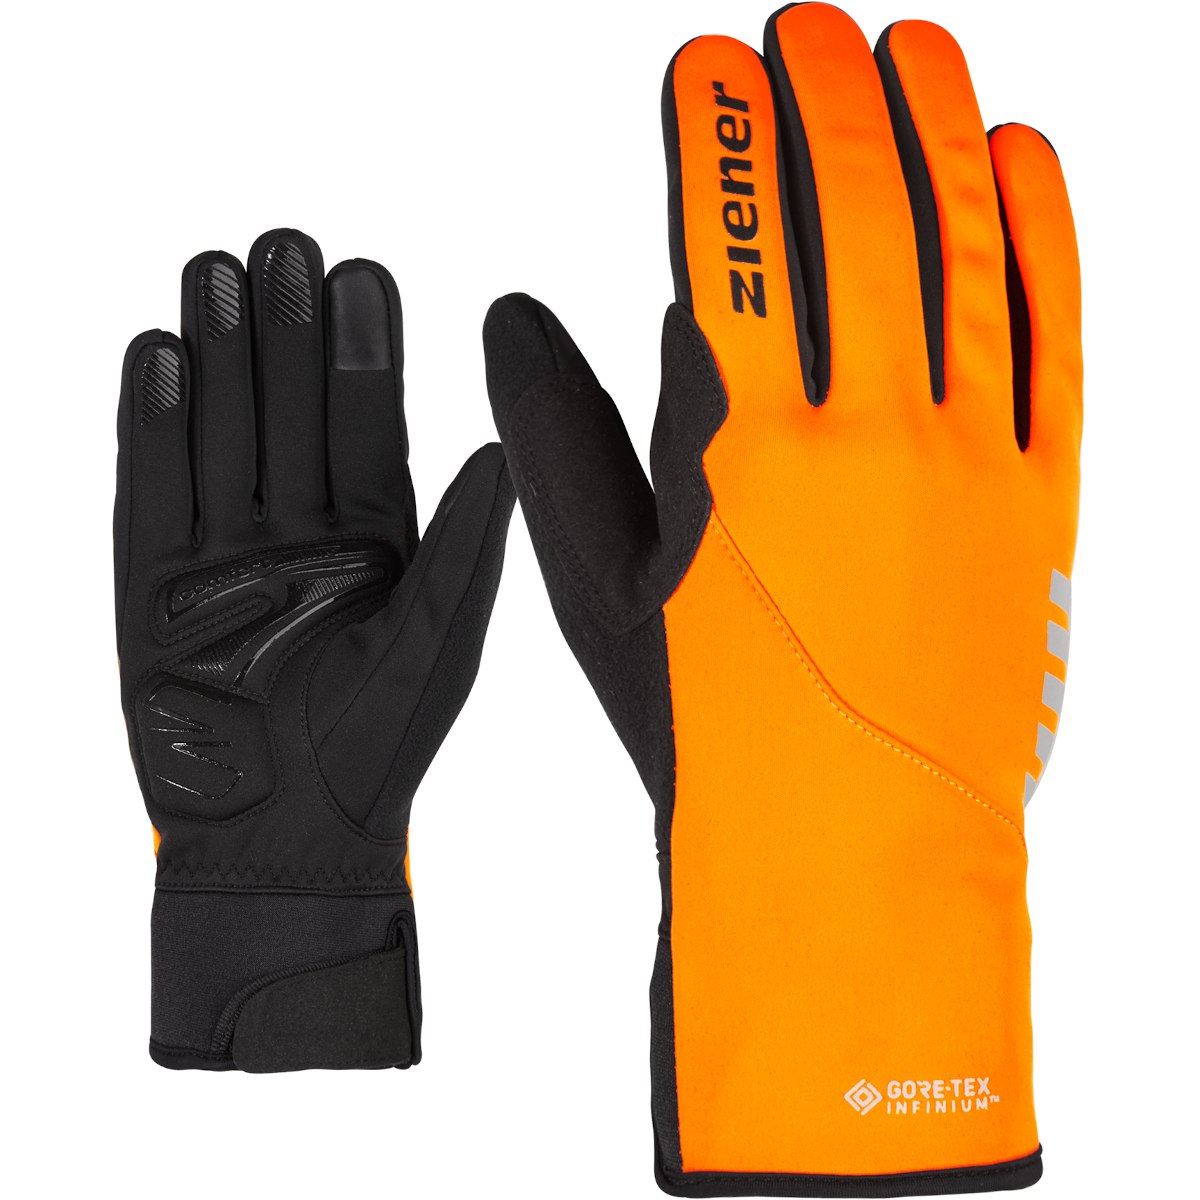 Picture of Ziener Dagur GTX Infinium Touch Bike Winter-Fullfinger Glove - poison orange